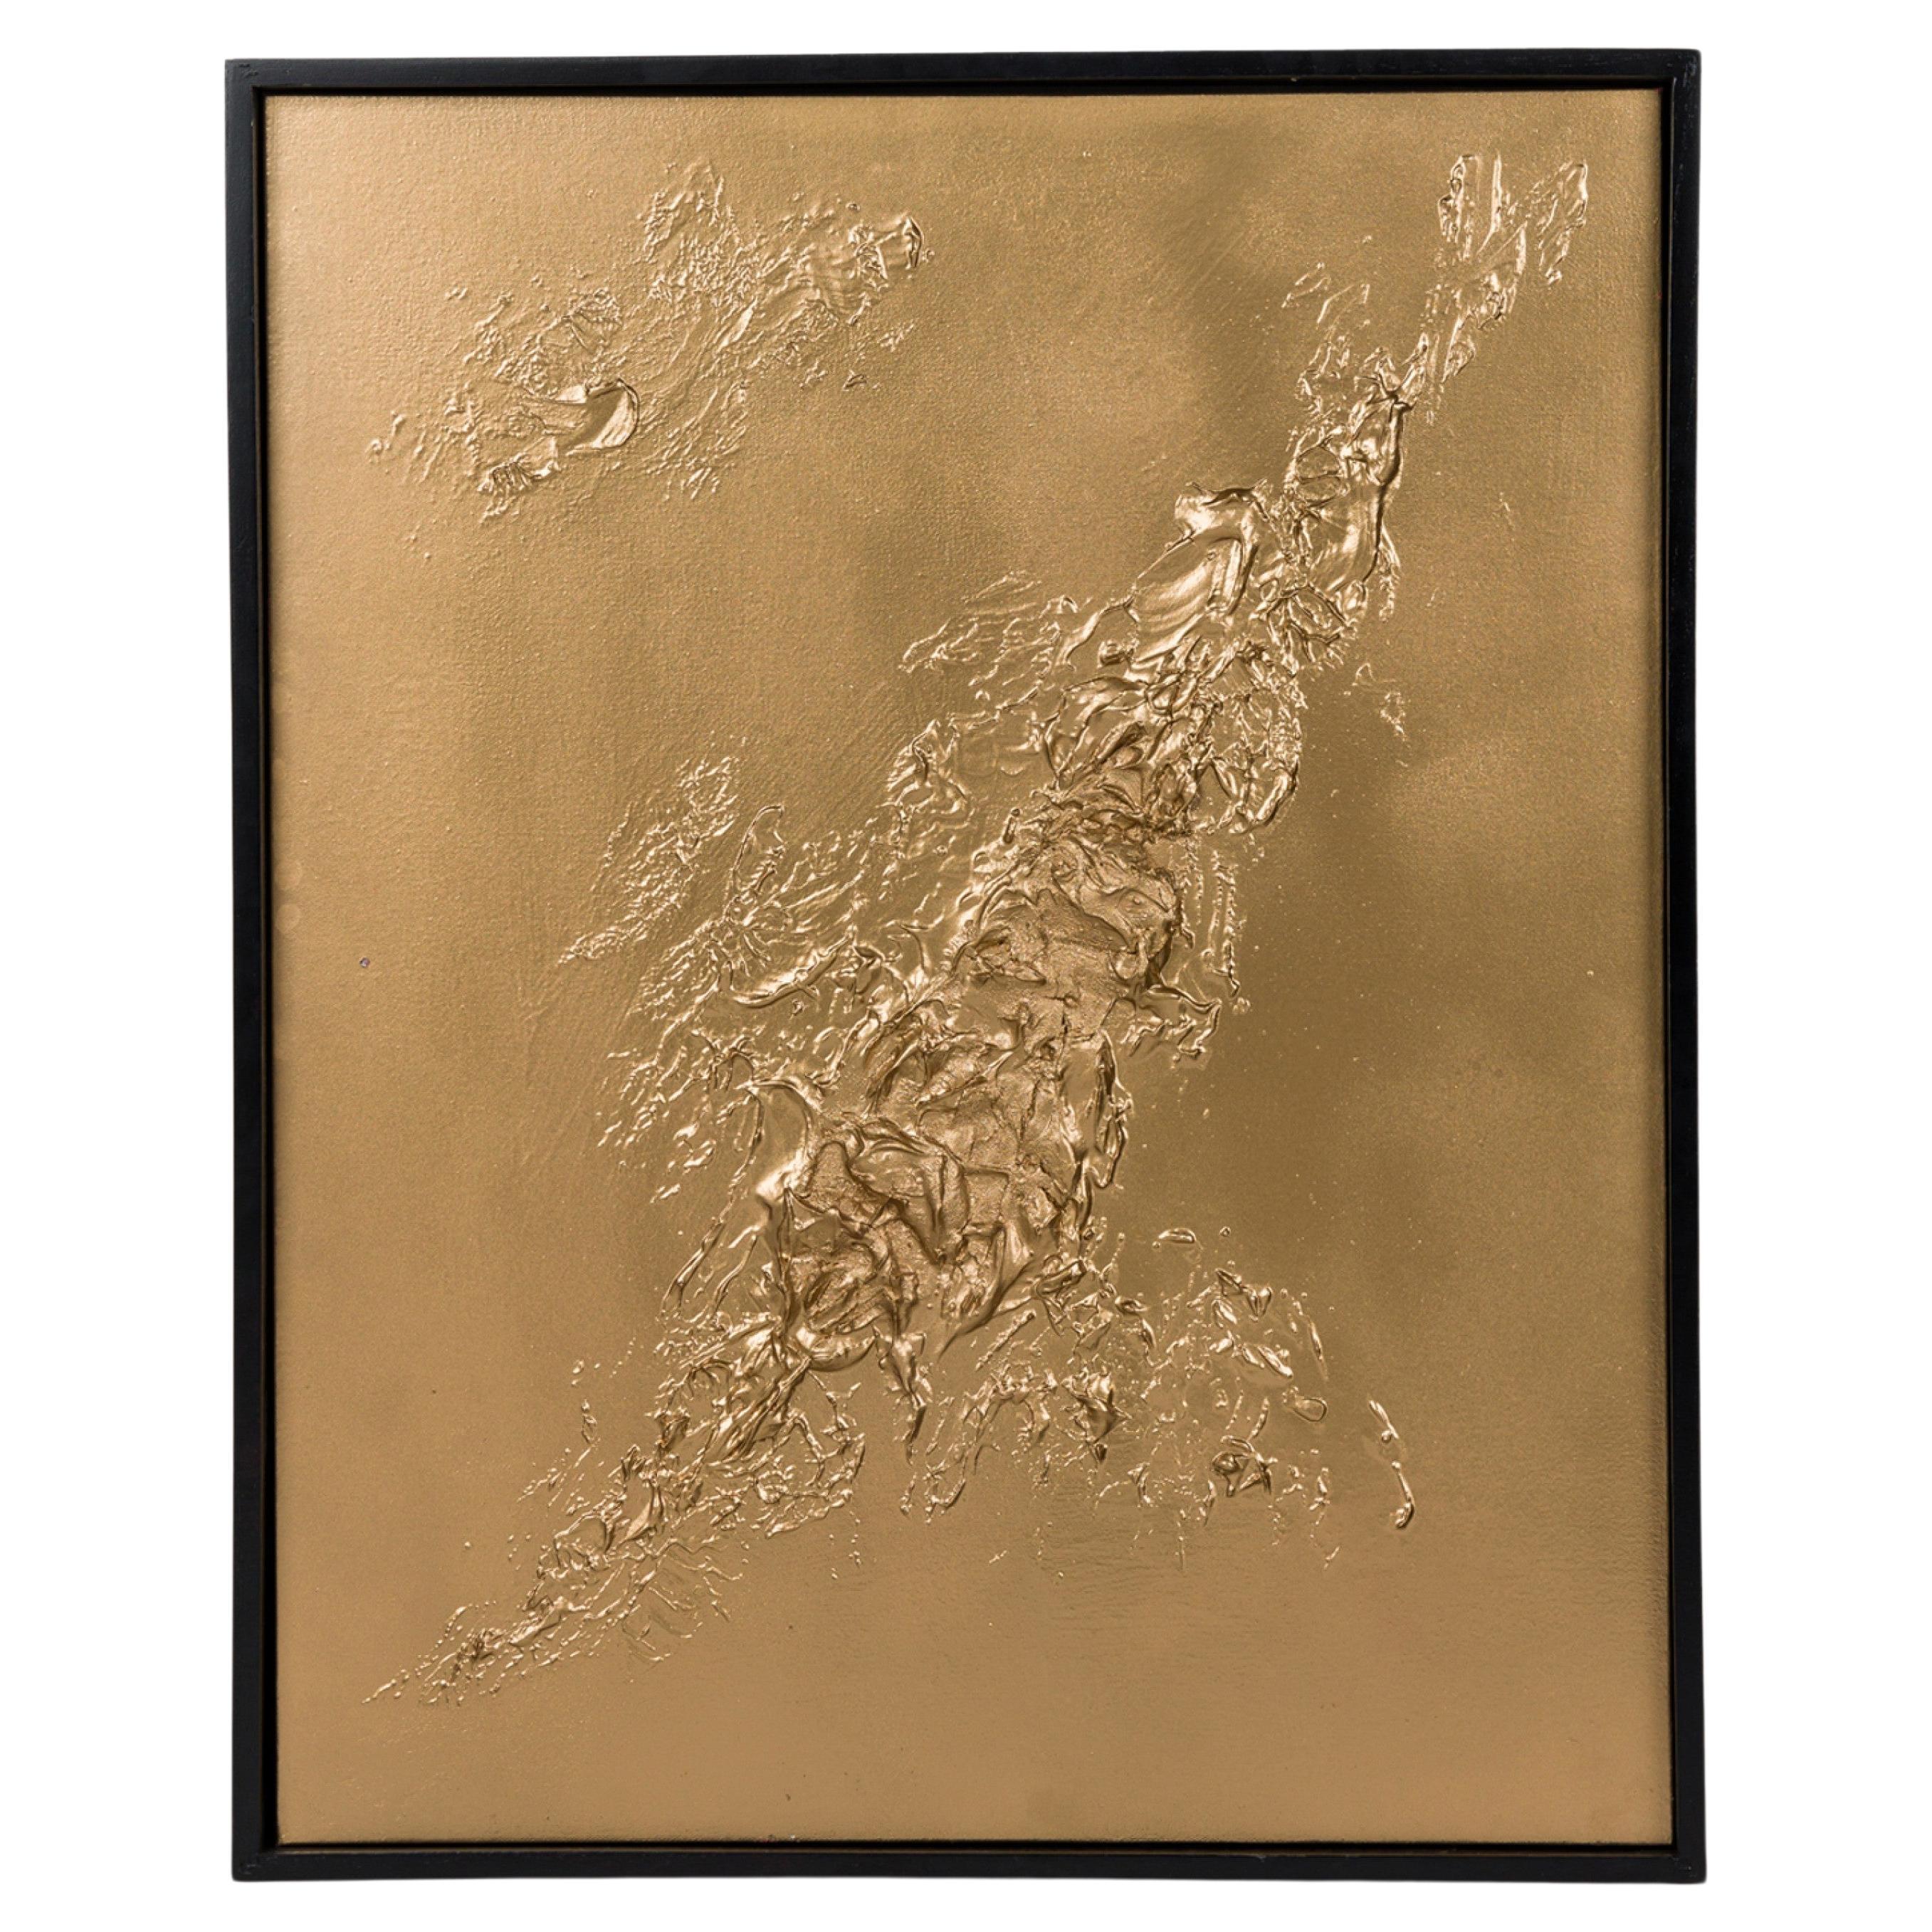 Framed Contemporary Mixed Media Gold Textural Abstract Painting Barbara Kisko